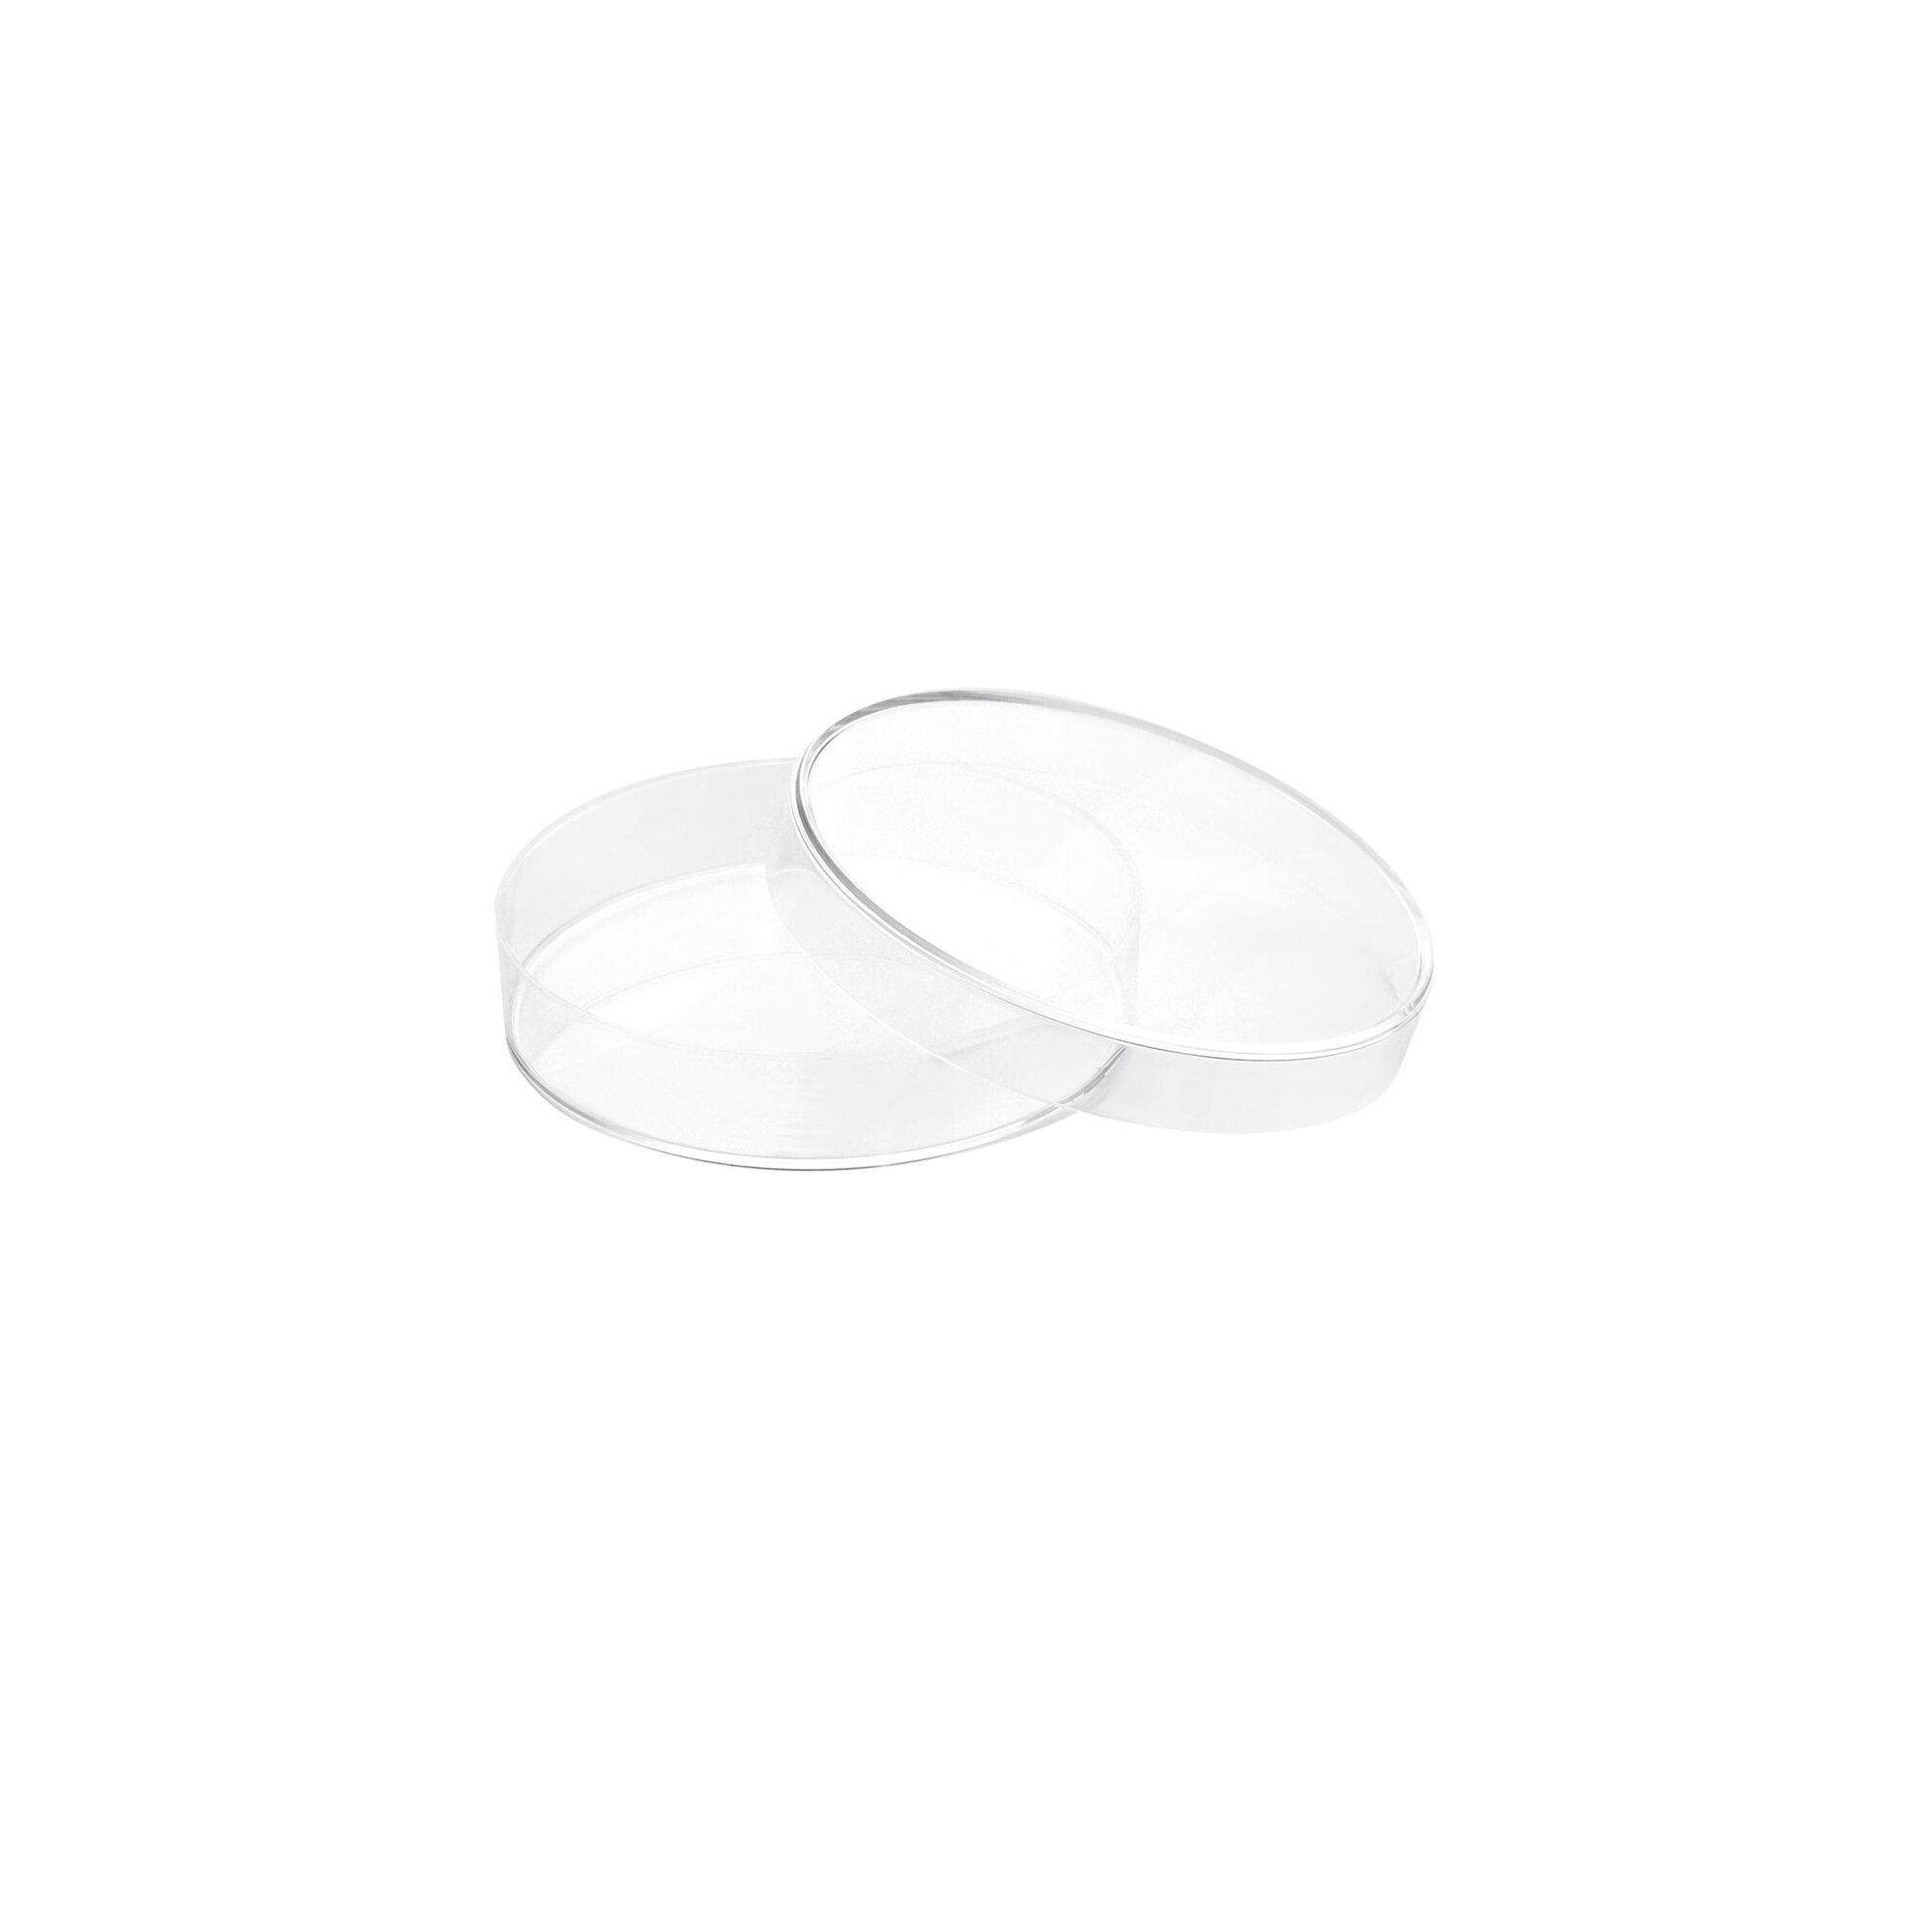 Чашка Петри полистирол, 70х15 мм, 16 шт., стерильная, пластиковая